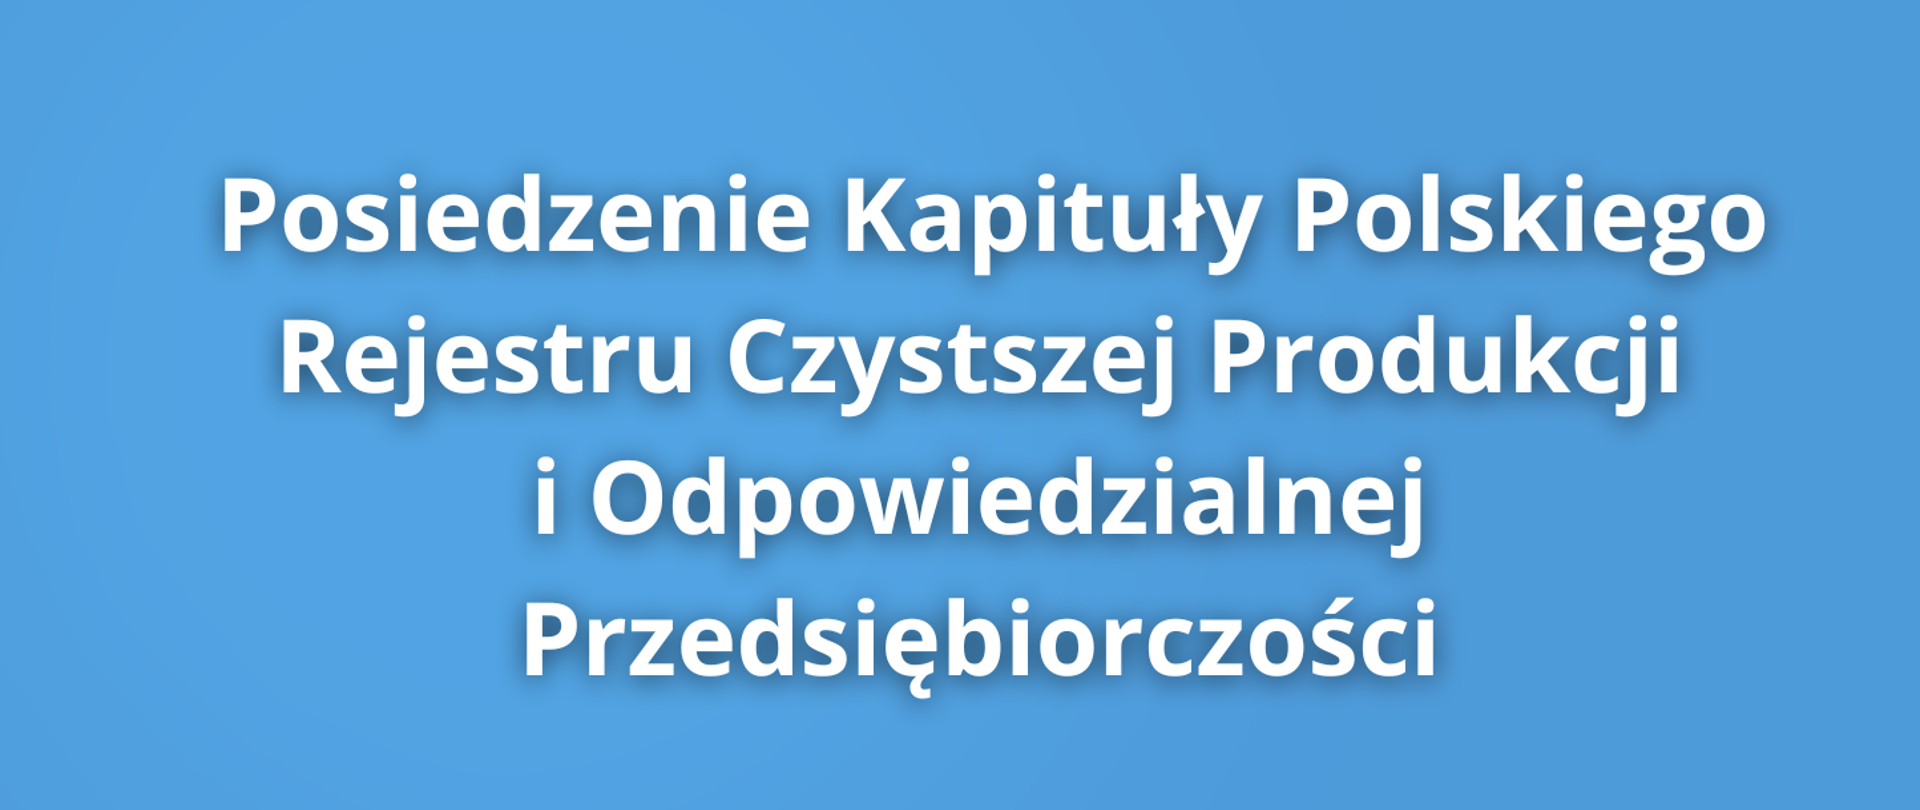 Posiedzenie Kapituły Polskiego Rejestru Czystszej Produkcji i Odpowiedzialnej Przedsiębiorczości 